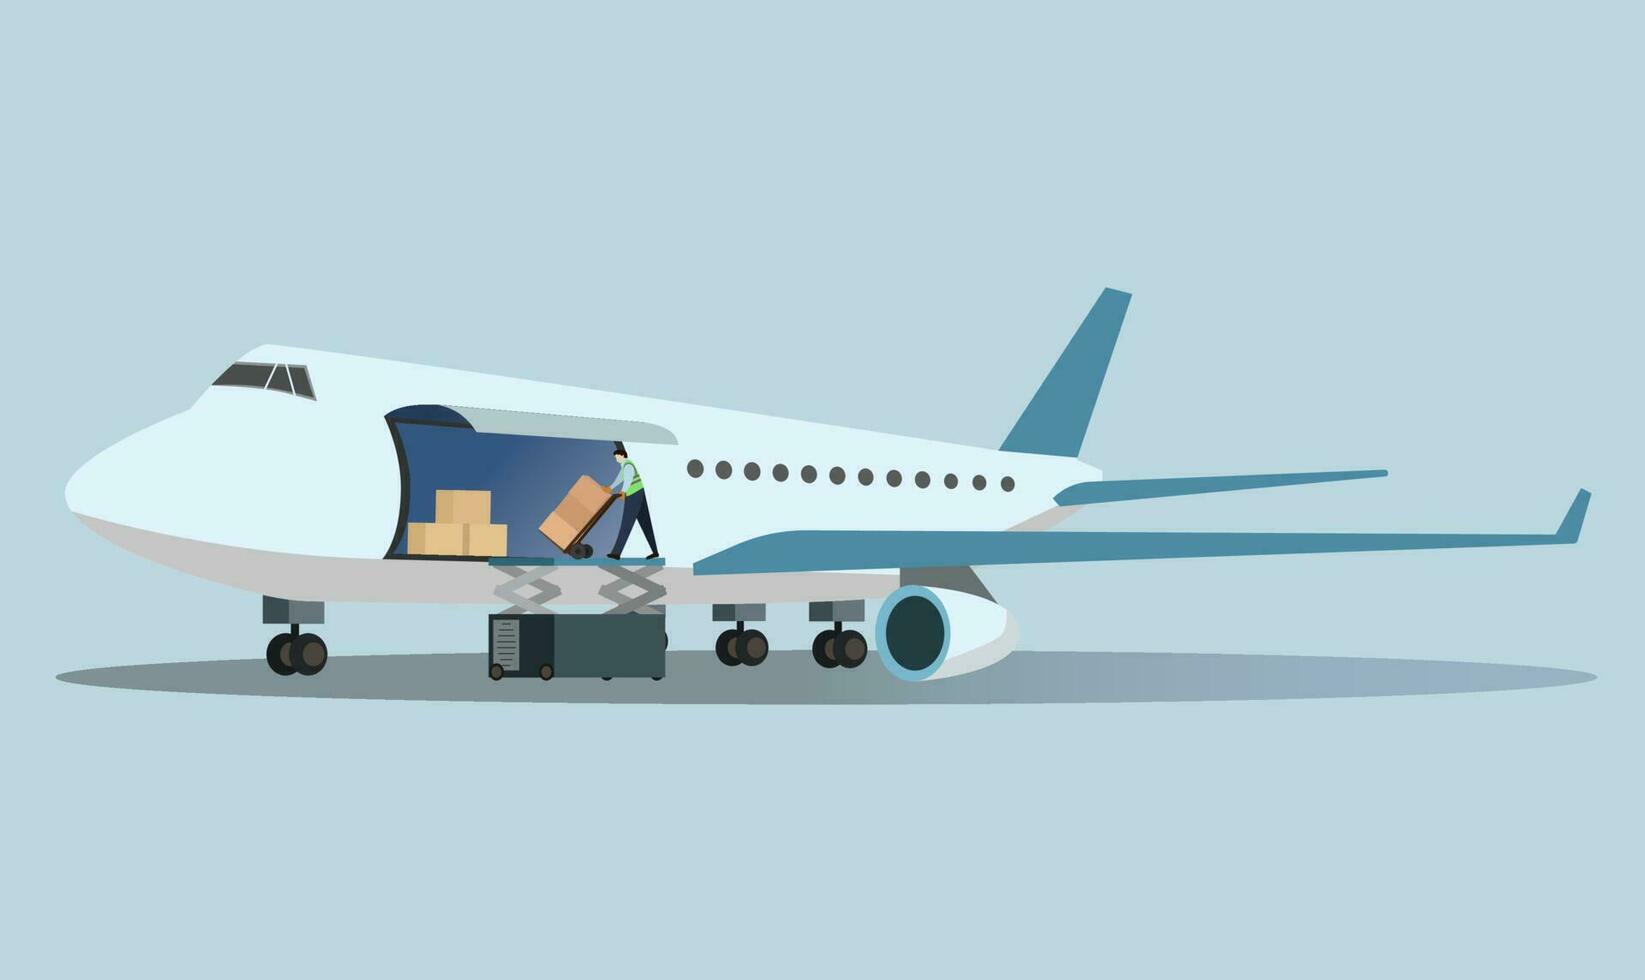 aria carico consegna vettore illustrazione, aereo nolo logistica, carico aereo la logistica concetto vettore grafico illustrazione, globale aria nolo la logistica.